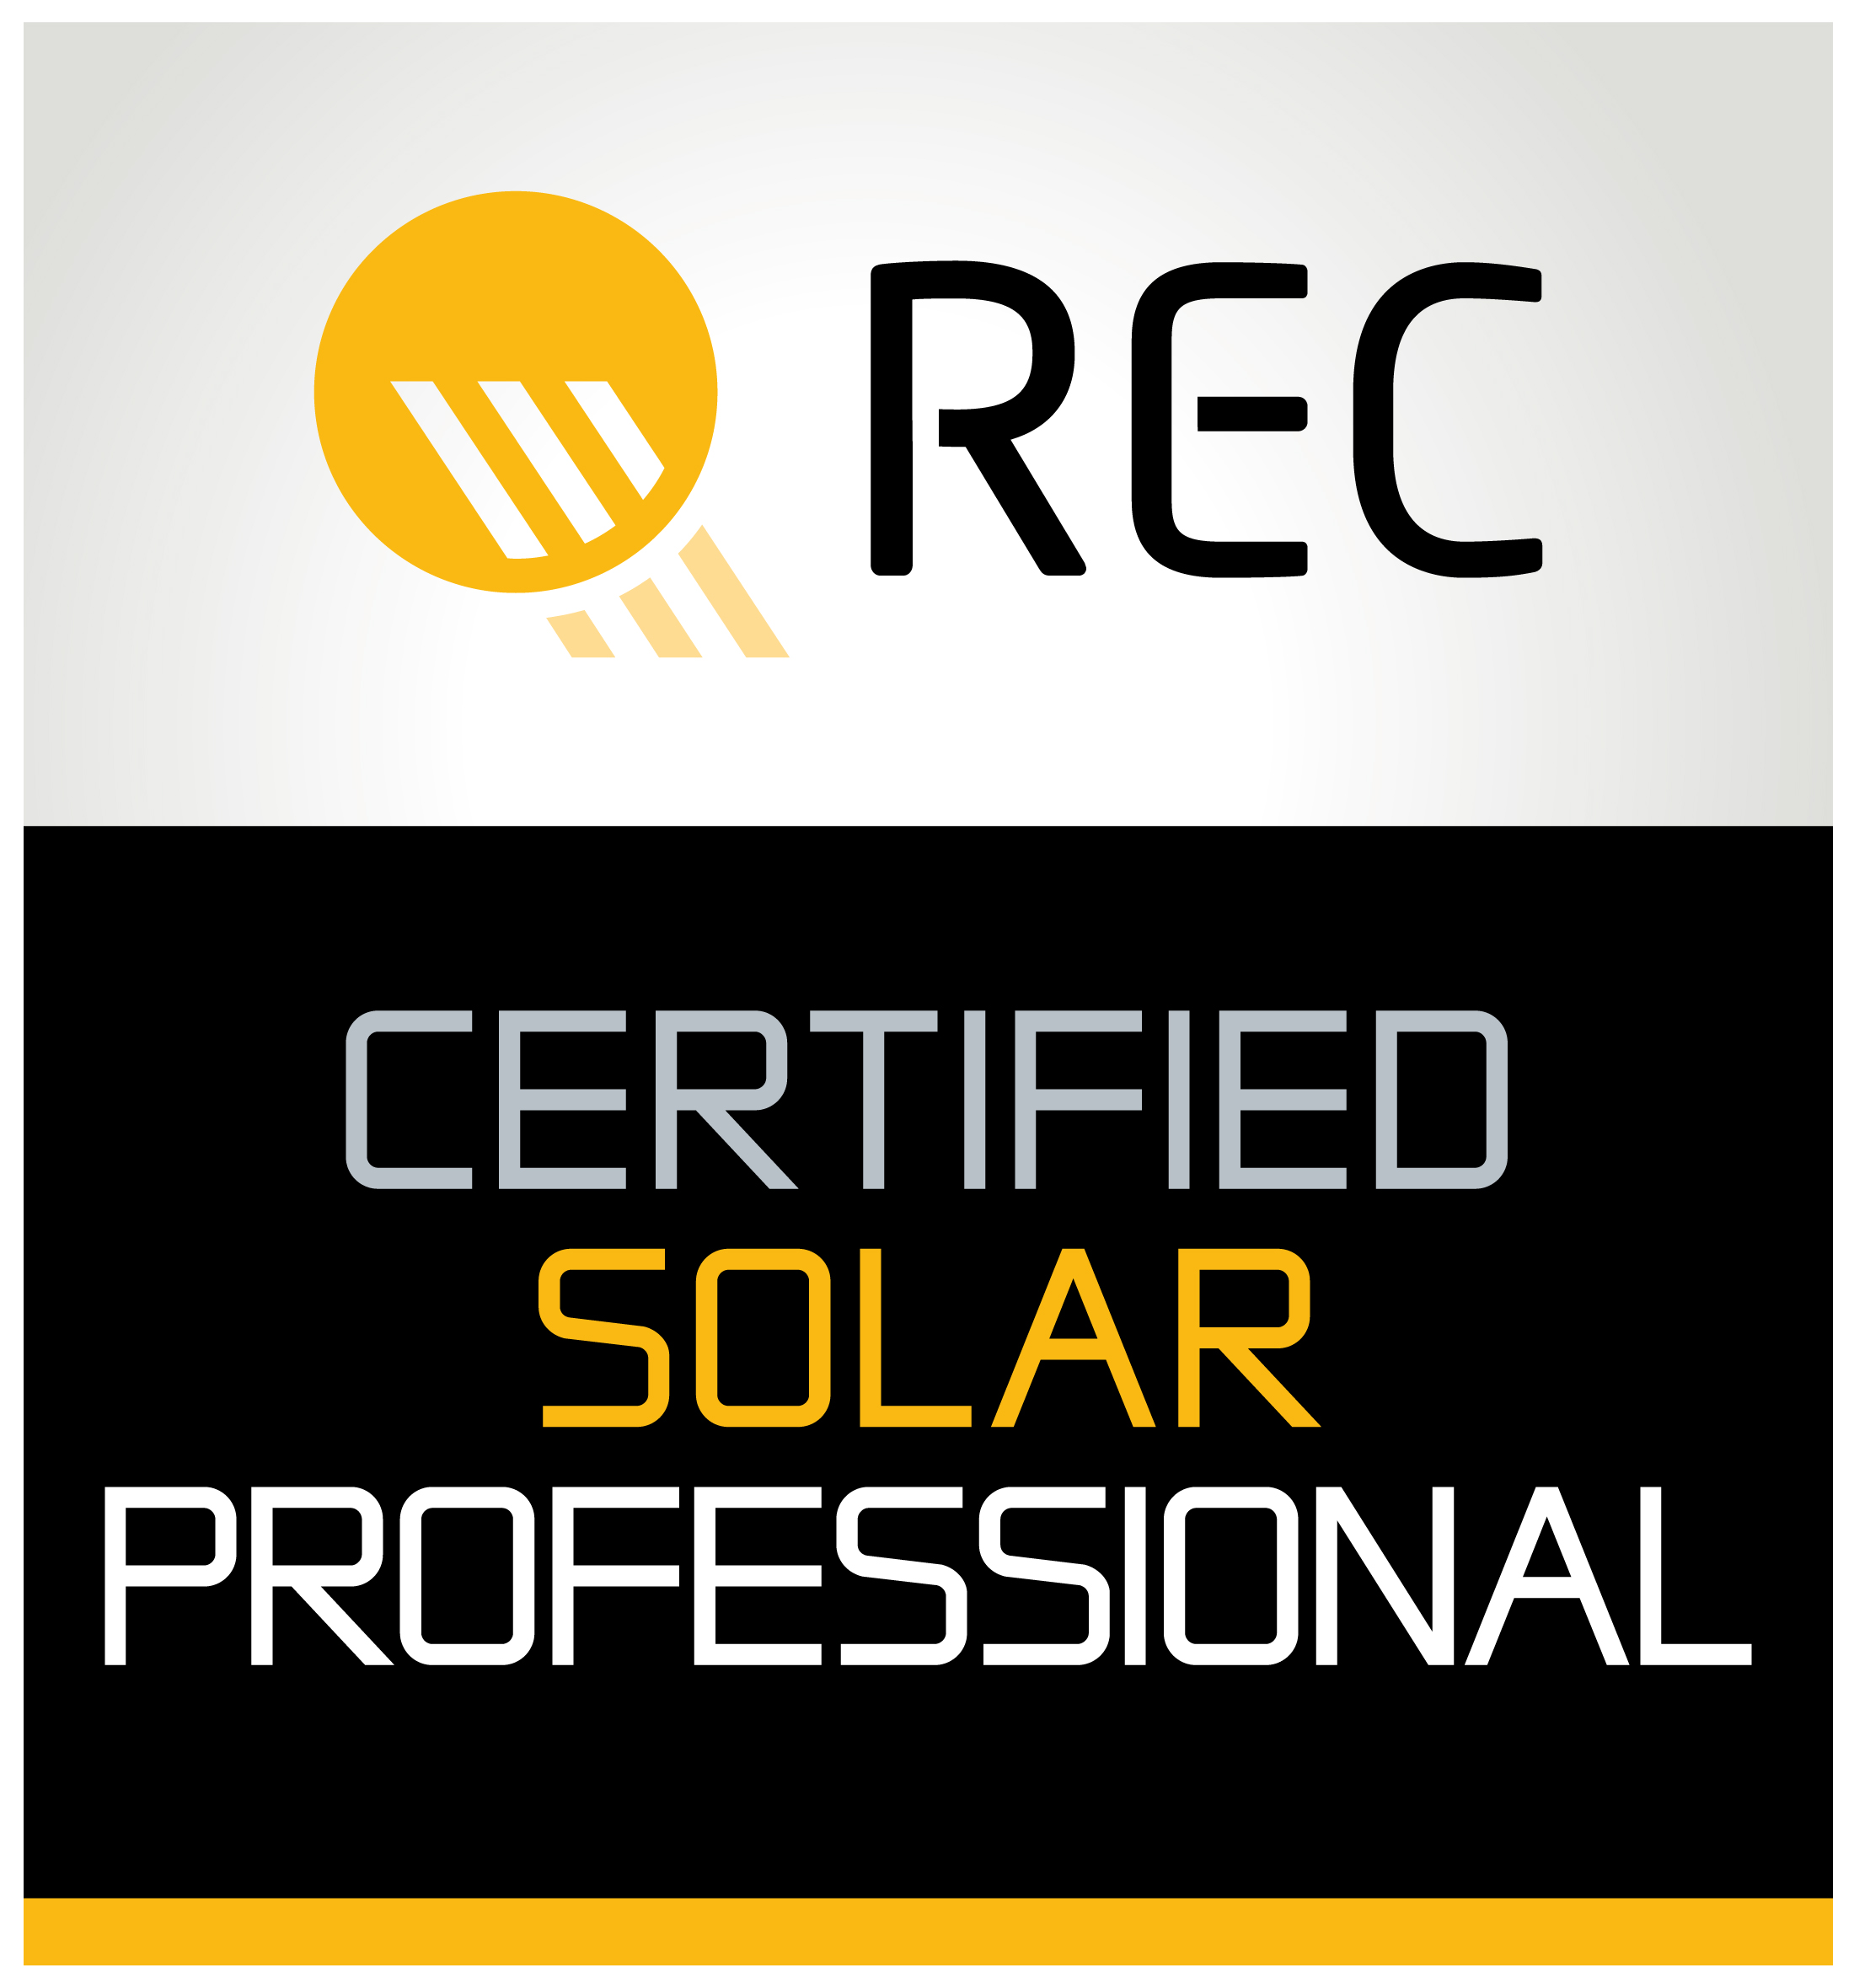 Die ÜZW ist zertifizierter Partner in Sachen PV-Module von REC (certified solar professional)